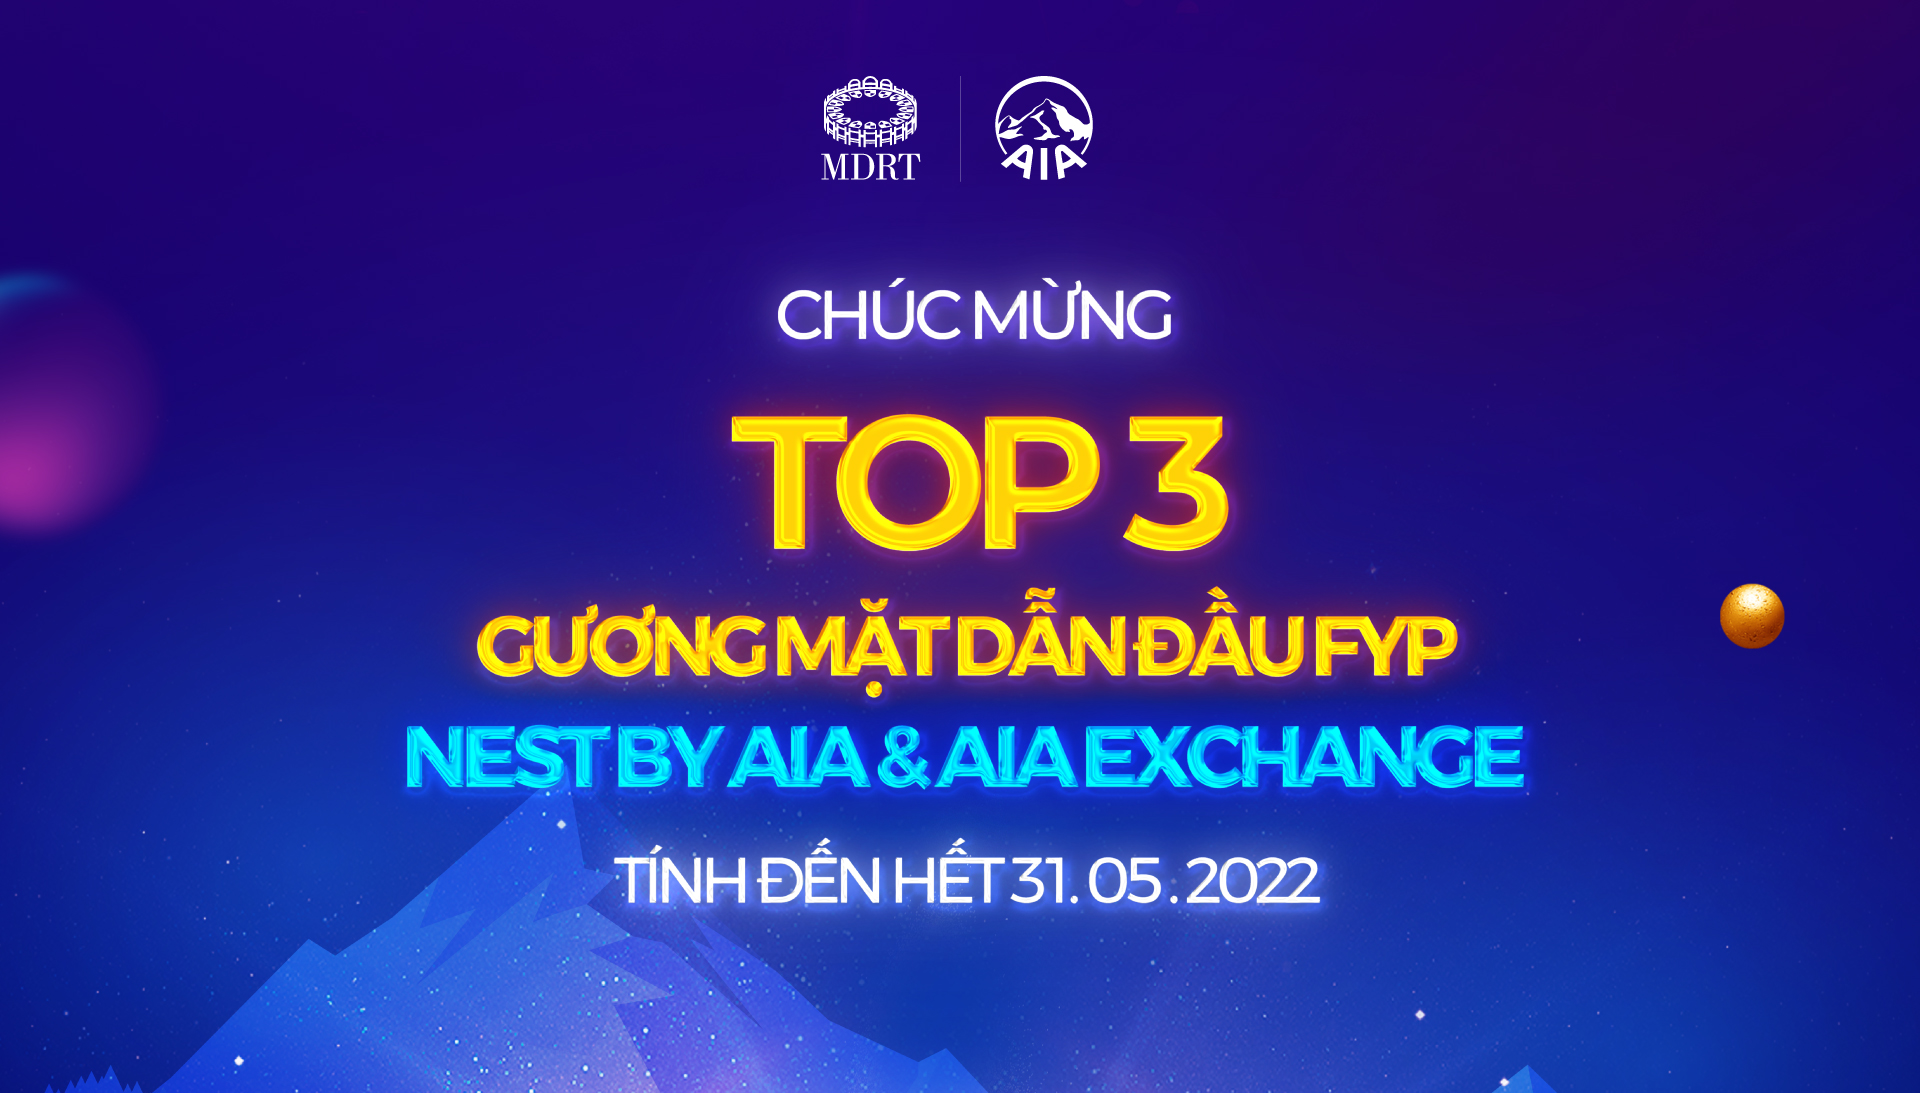 CHÚC MỪNG TOP 3 GƯƠNG MẶT DẪN ĐẦU FYP THÁNG 05.2022 KÊNH NEST & EXCHANGE